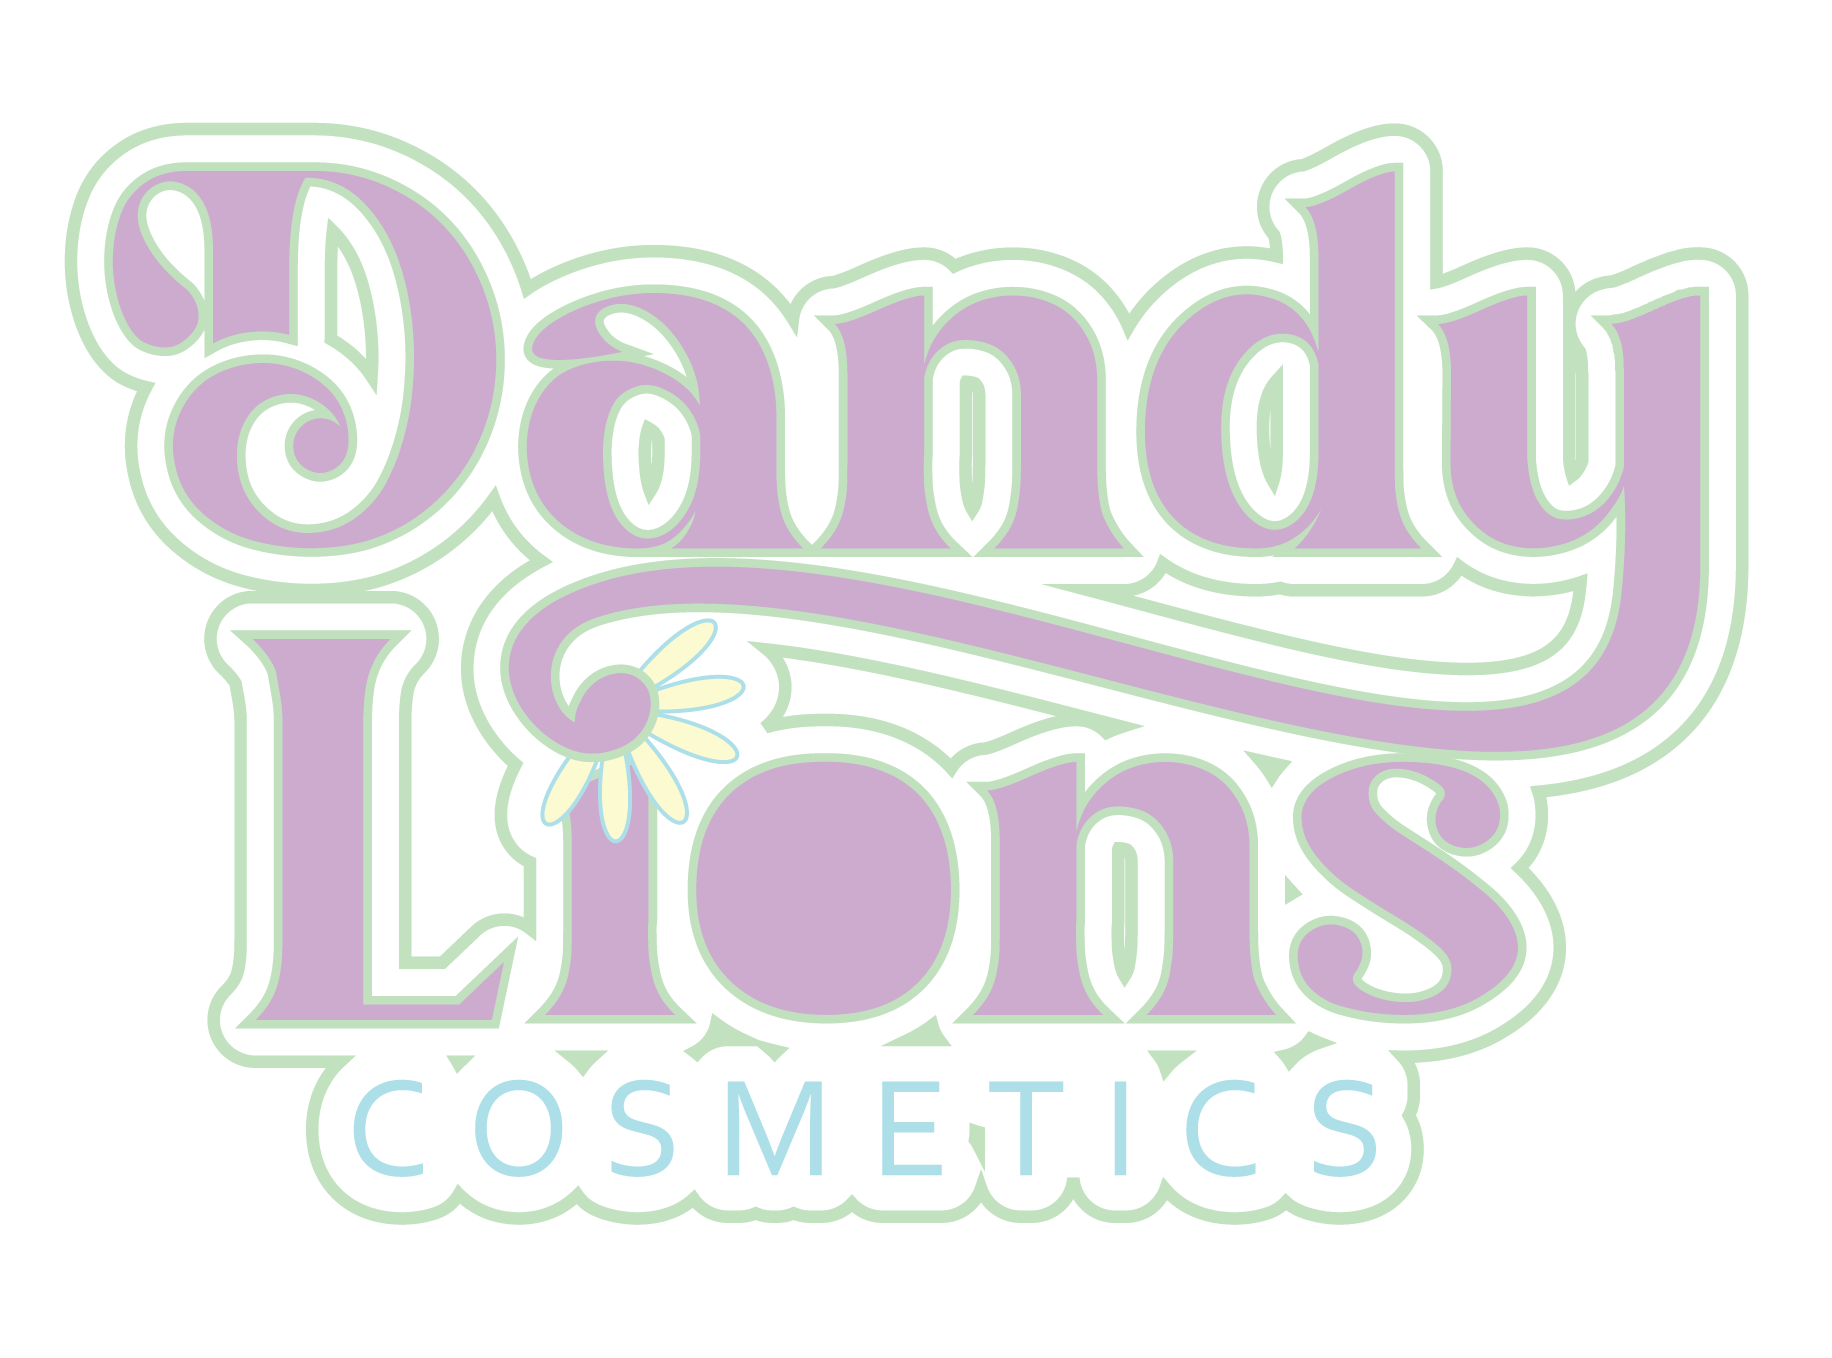 Dandy Lions Cosmetics